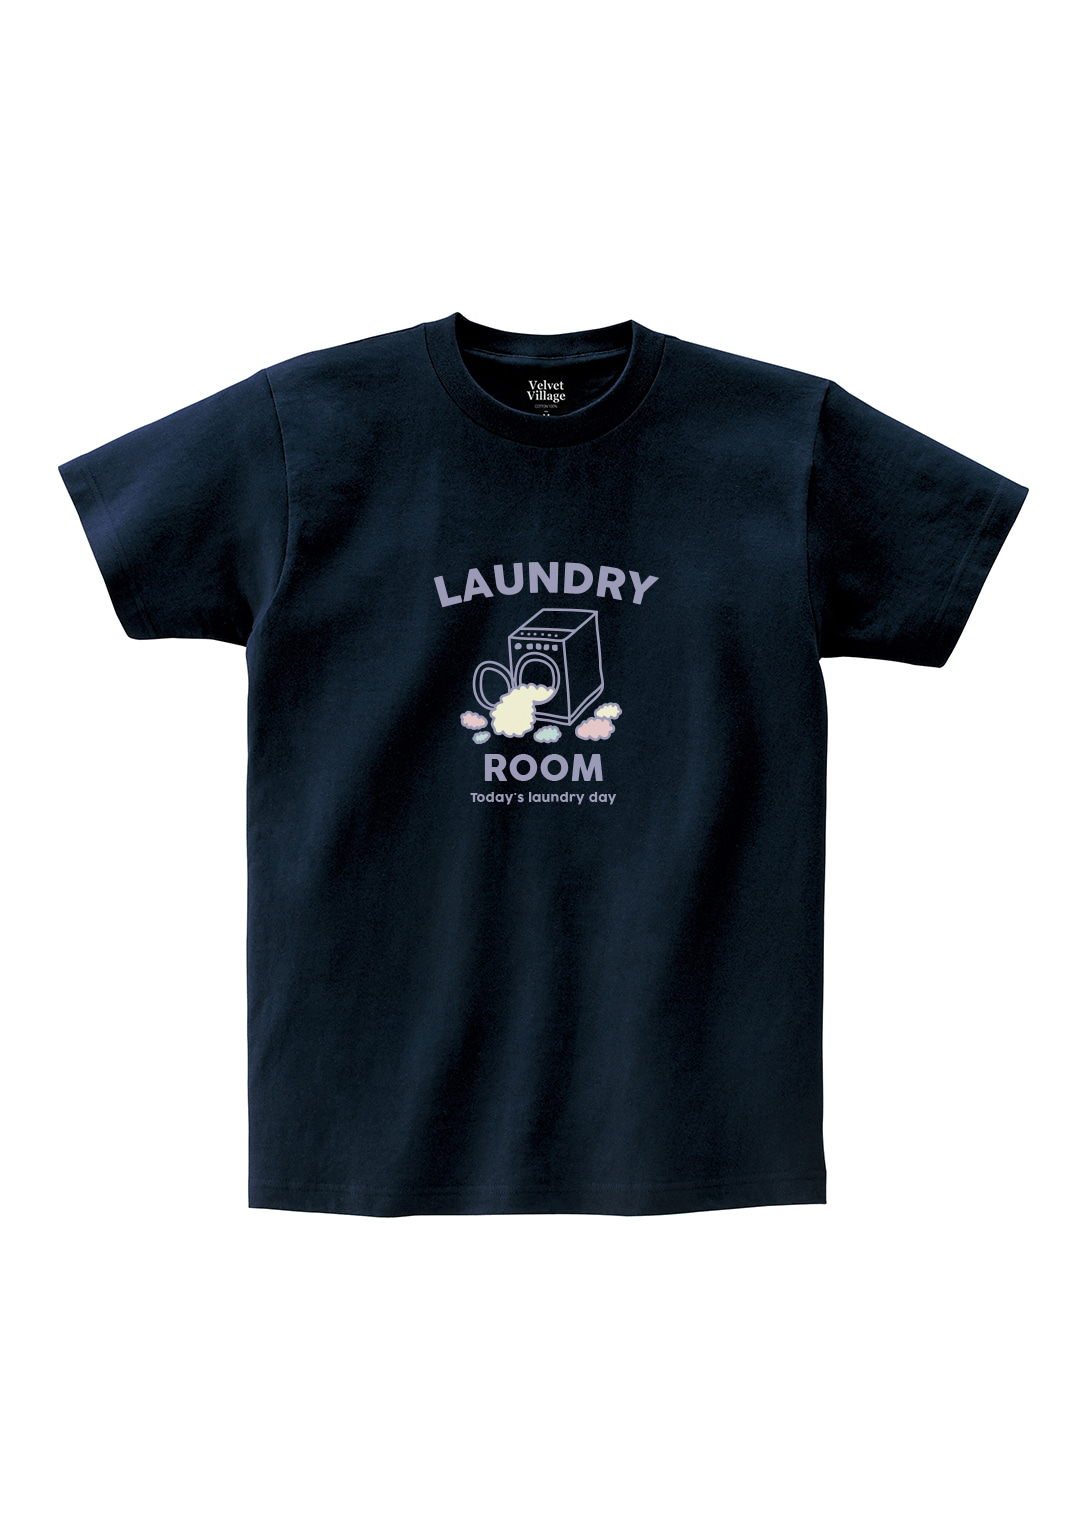 Laundry T-shirts (Navy)